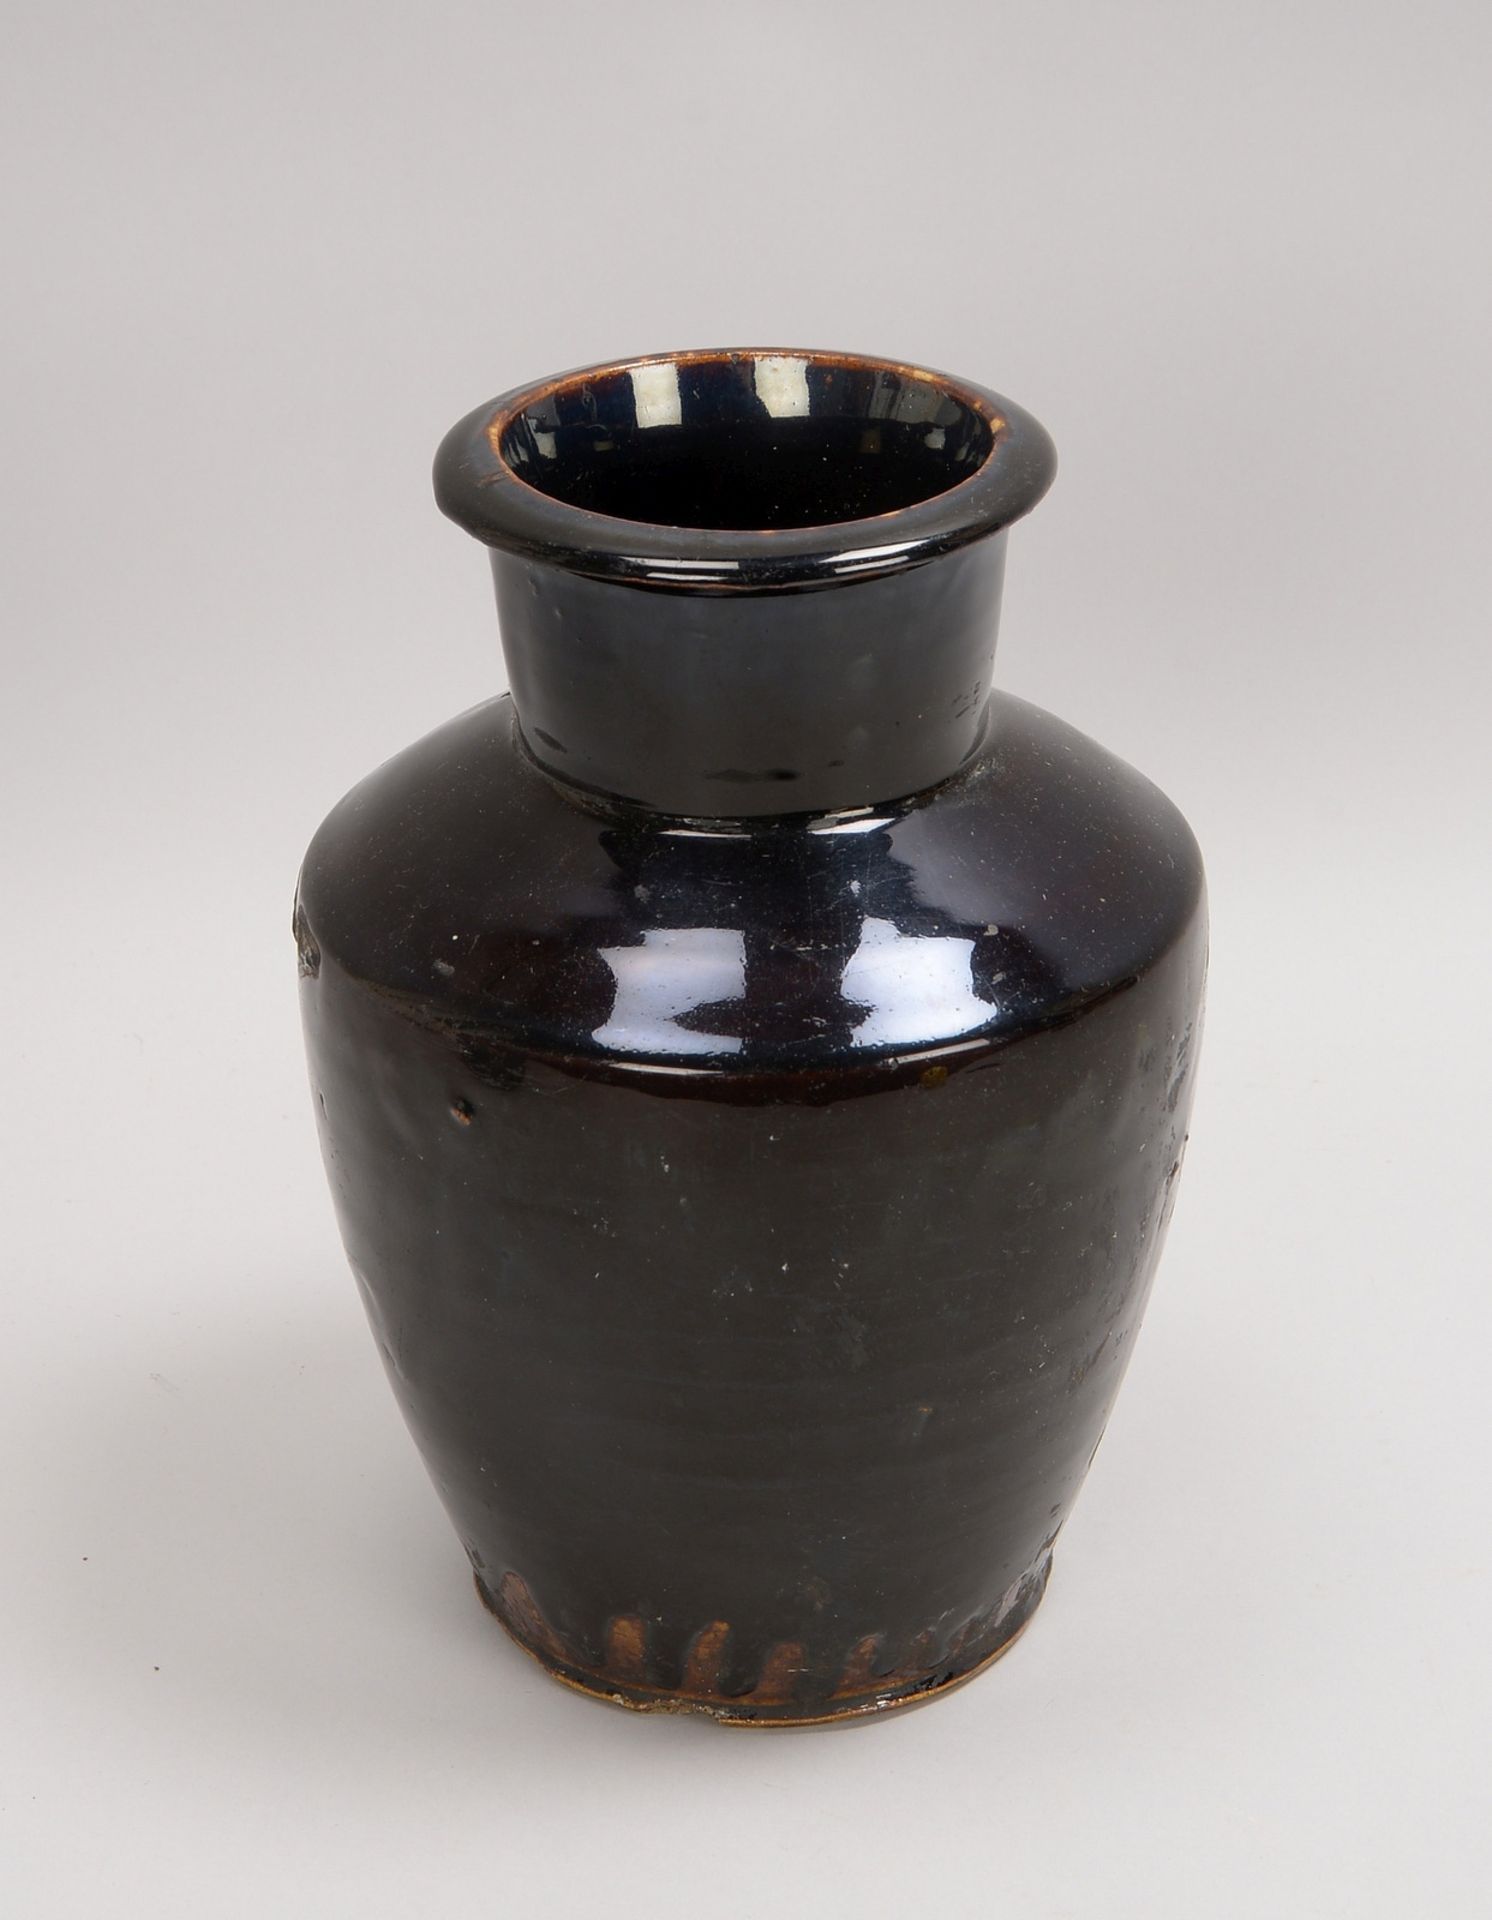 Vase (China, 16. Jh. - Ming-Dynastie), Keramik, mit schwarzer Glasur; Höhe 28 cm - Bild 2 aus 2